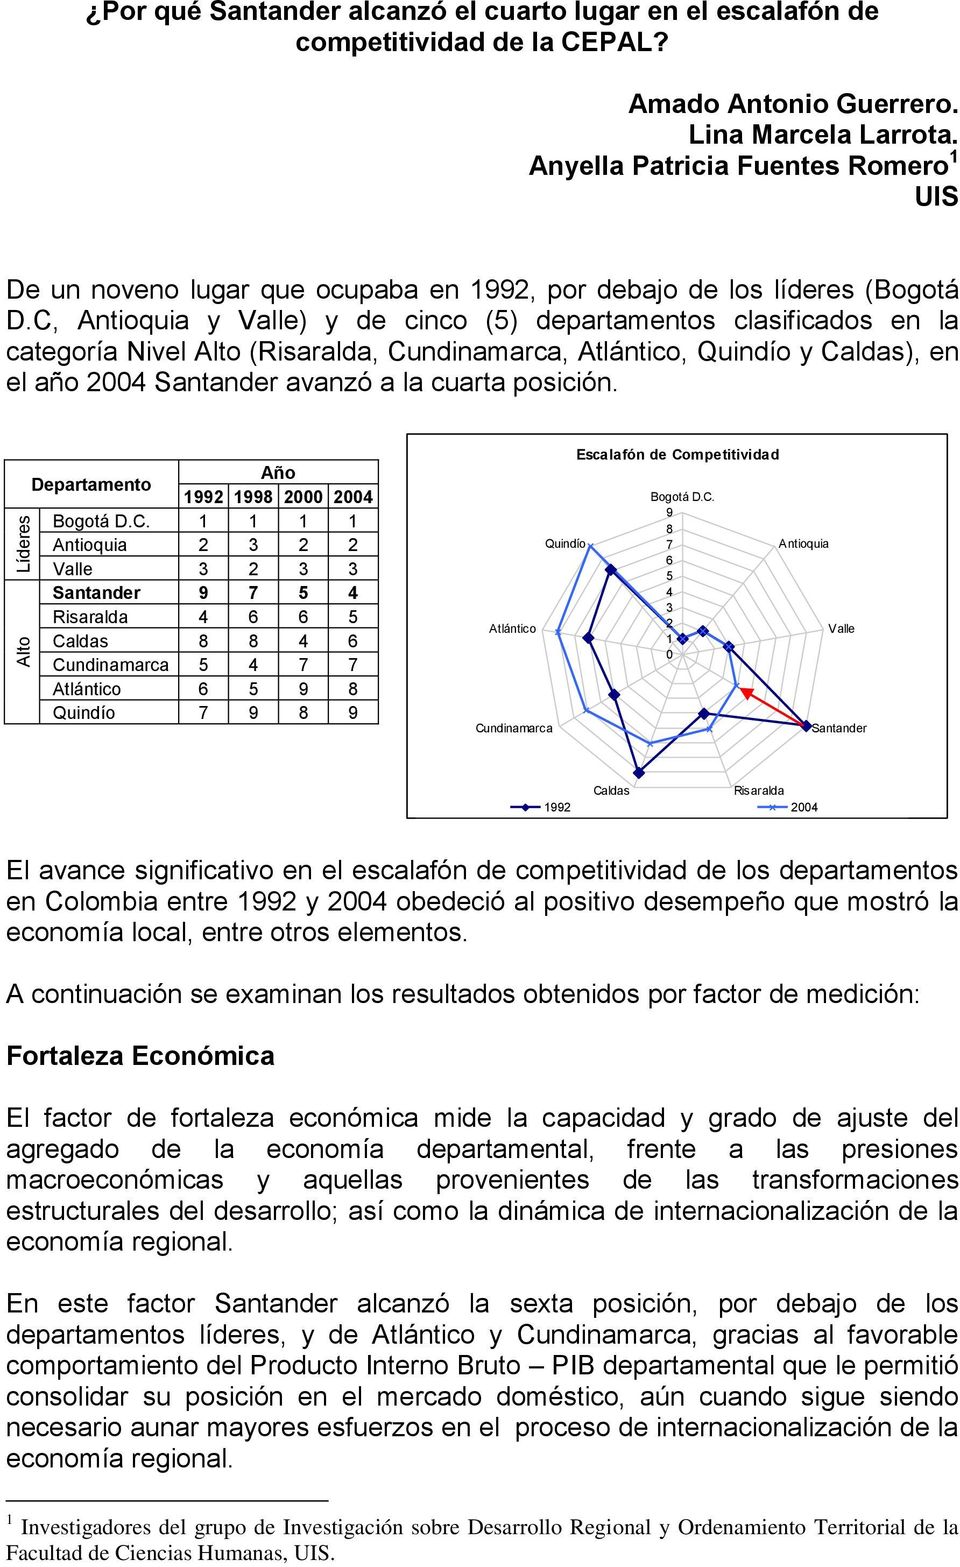 C, Antioquia y Valle) y de cinco (5) departamentos clasificados en la categoría Nivel Alto (Risaralda, Cundinamarca, Atlántico, Quindío y Caldas), en el año 2004 Santander avanzó a la cuarta posición.